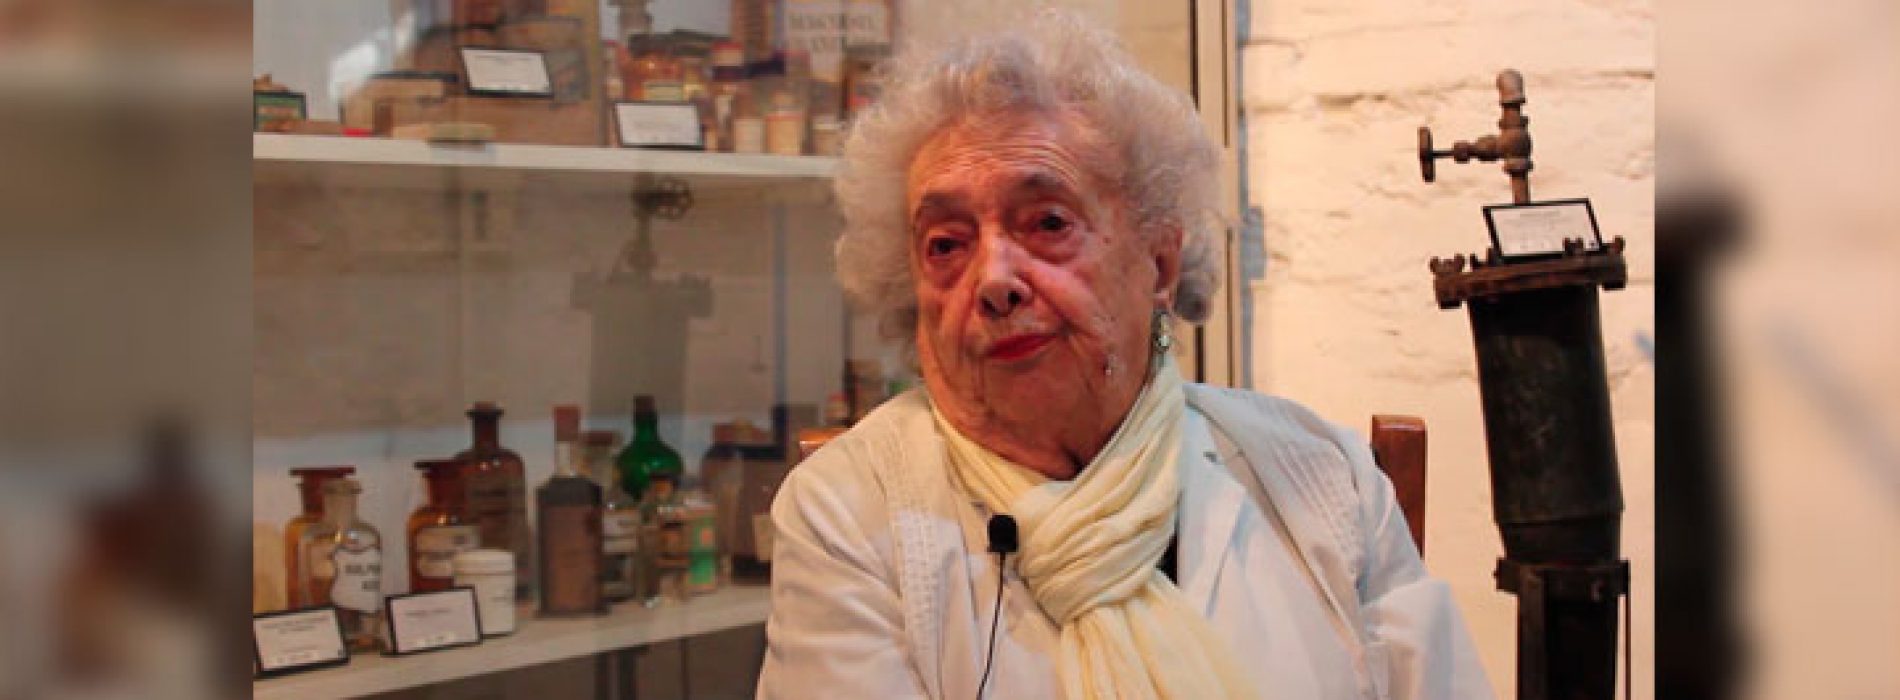 Recorre con nosotros el Museo de Farmacia “Prof César Leyton Caravagno”, en el nuevo video de nuestra Facultad